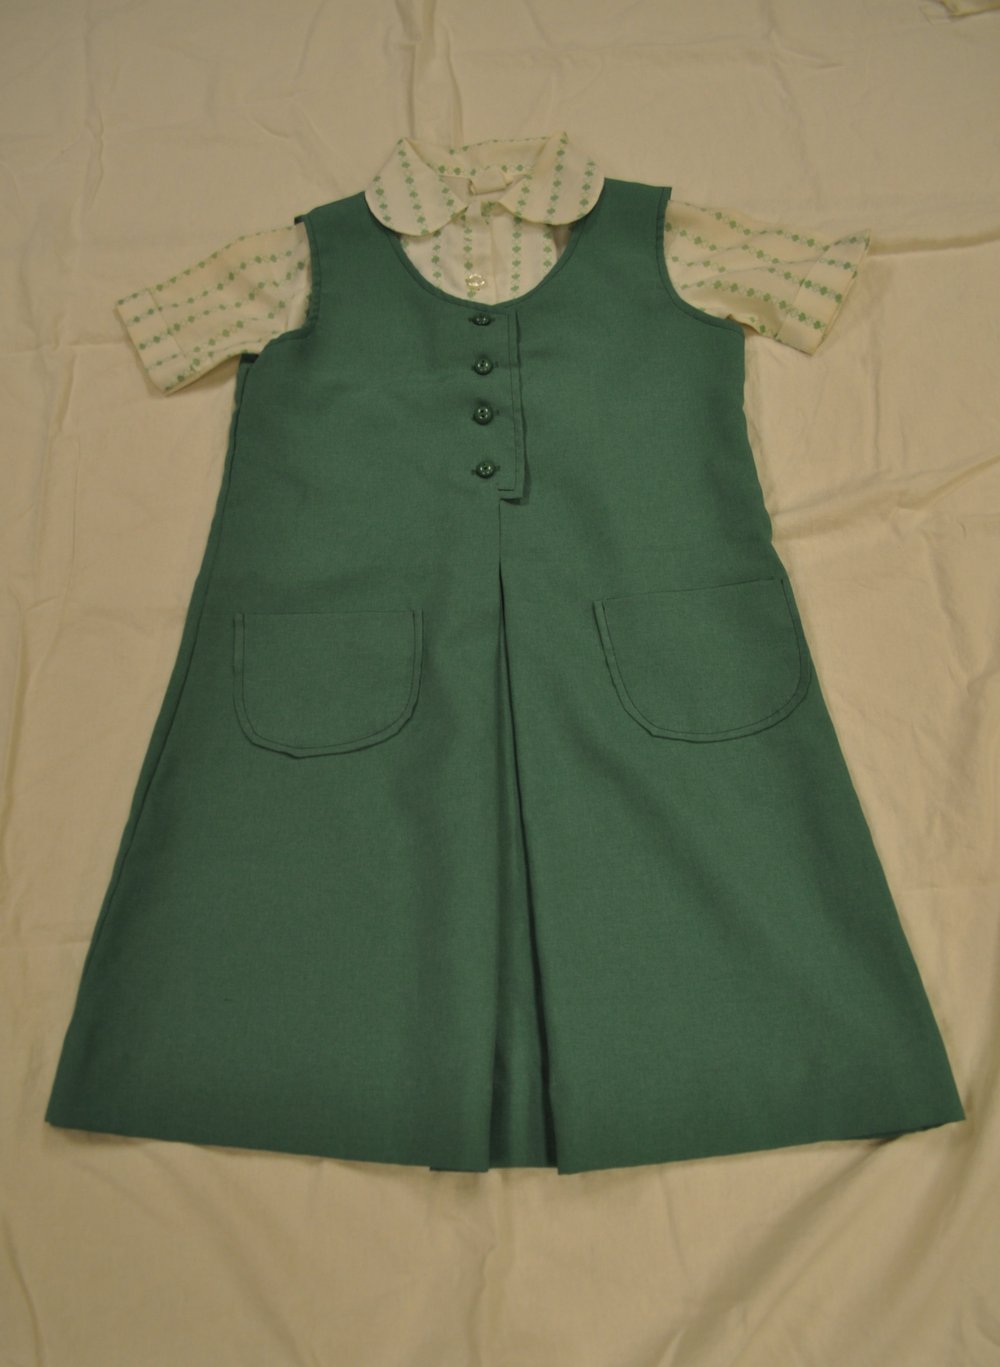 Figure 16:1980s Junior Uniform